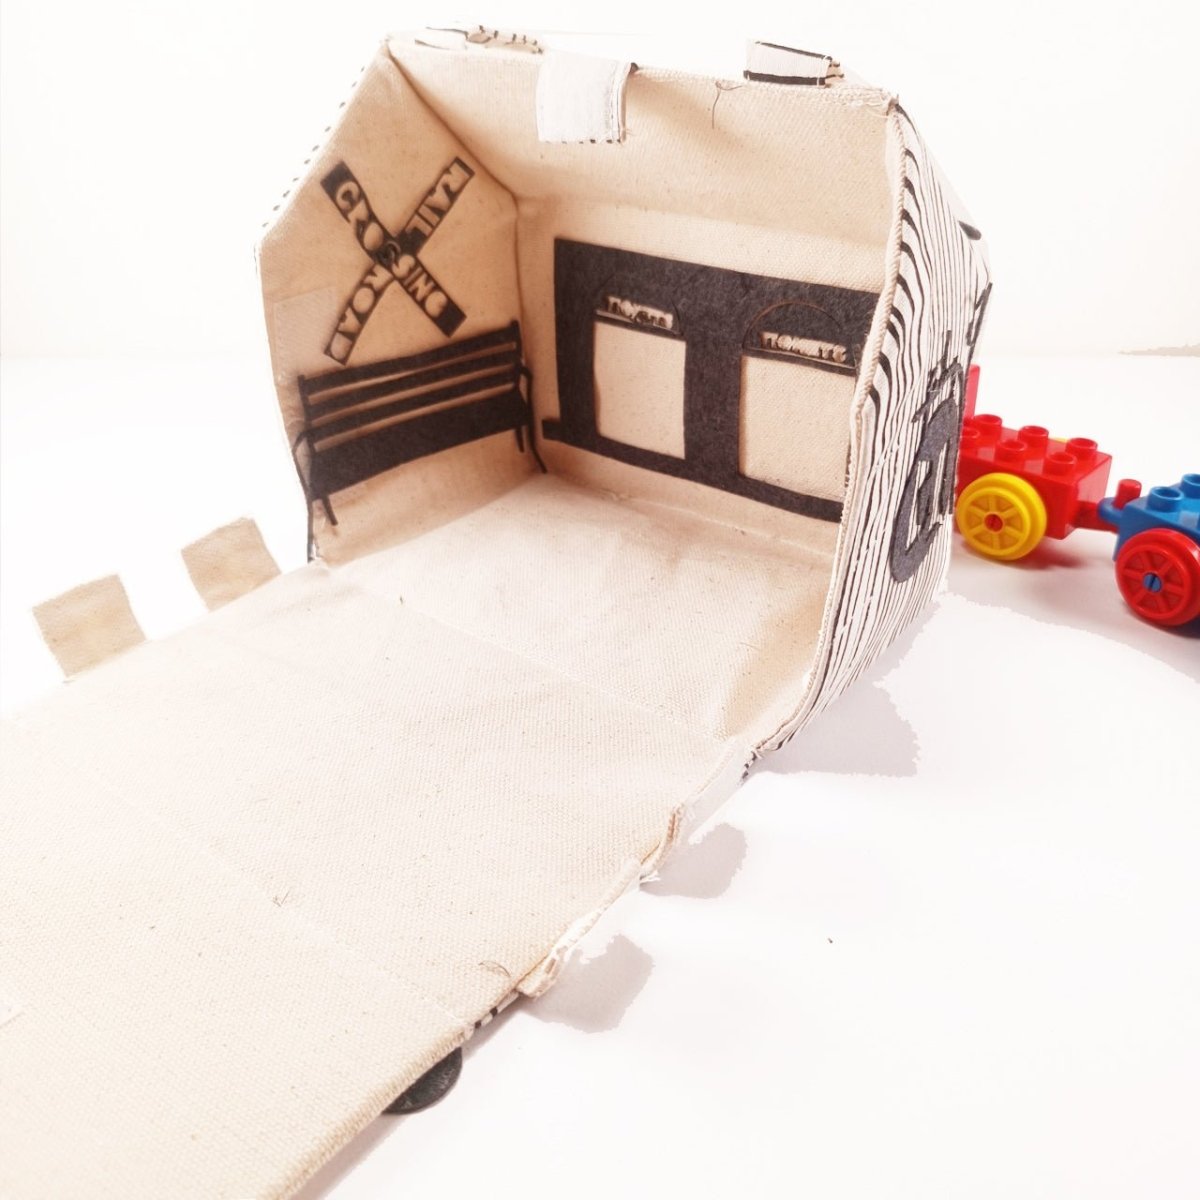 CuddlyCoo Fabric Doll House- House, Barn, Train Station, Garage - CCDOLLHOUSEBAG4